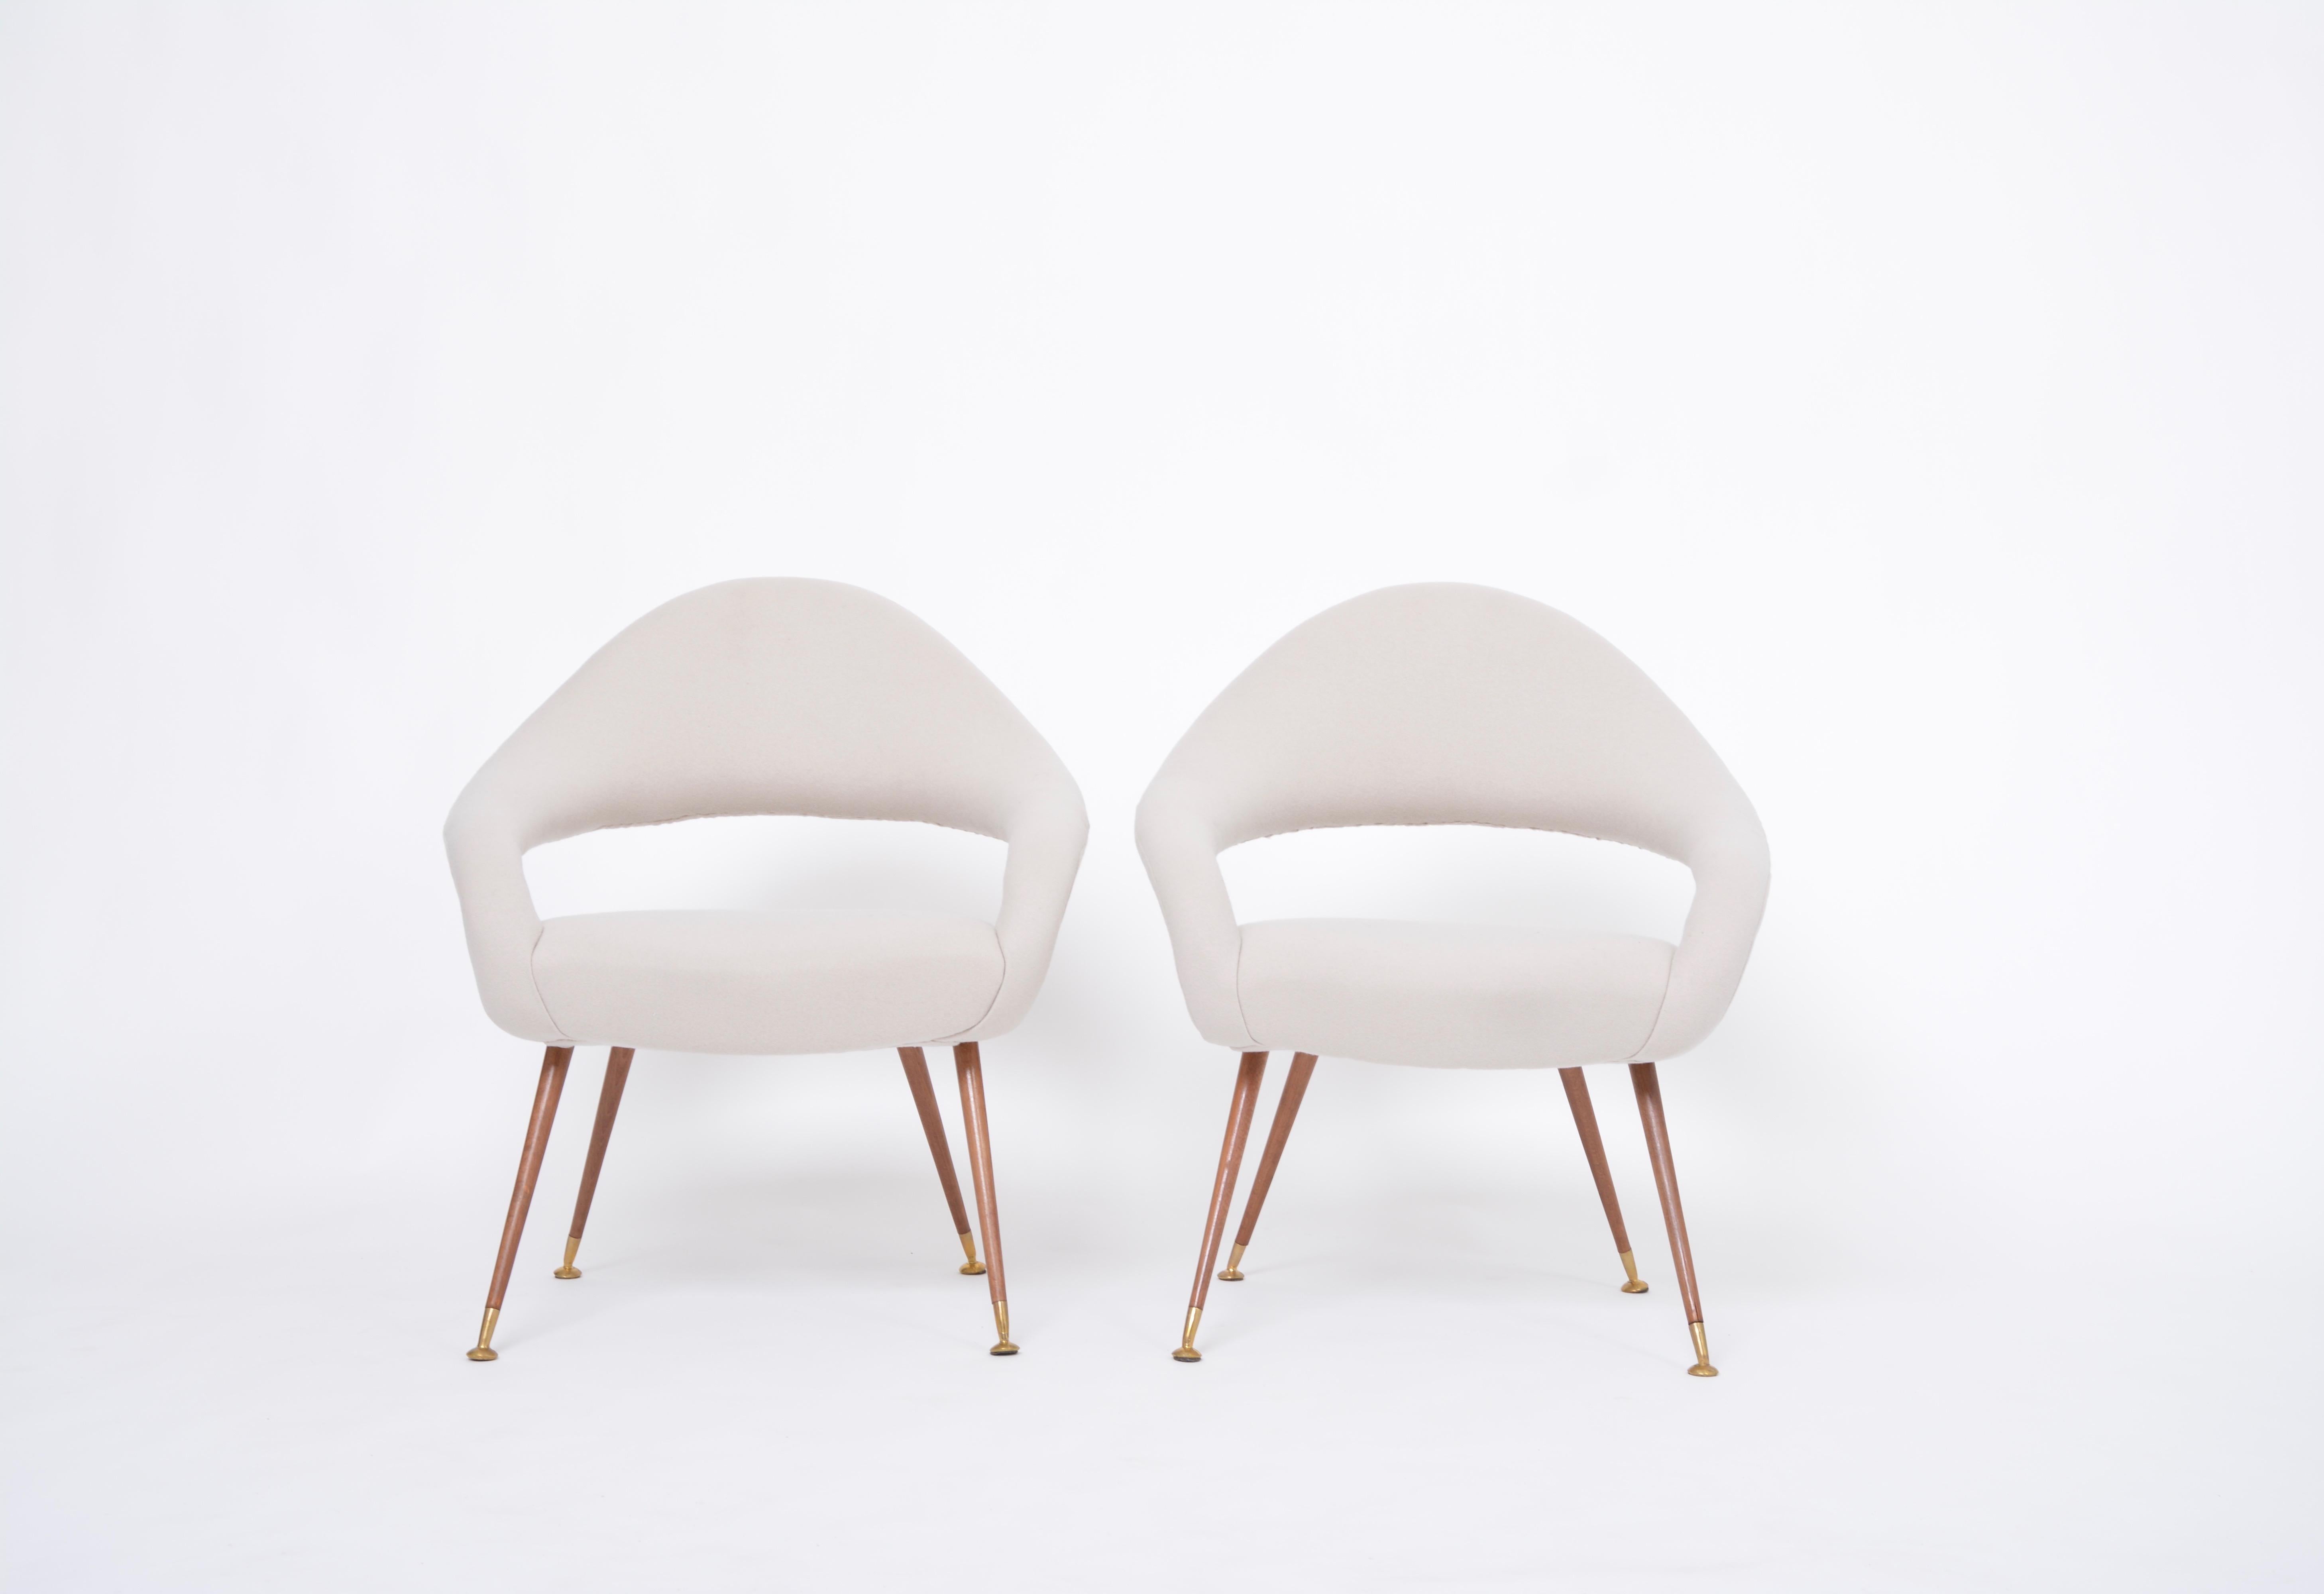 Paire de chaises longues italiennes du milieu du siècle Modèle DU 55 P par Gastone Rinaldi 
Gastone Rinaldi a conçu cette chaise en 1955 pour la société de production italienne RIMA. Au fil des ans, cette chaise est devenue l'un de ses designs les